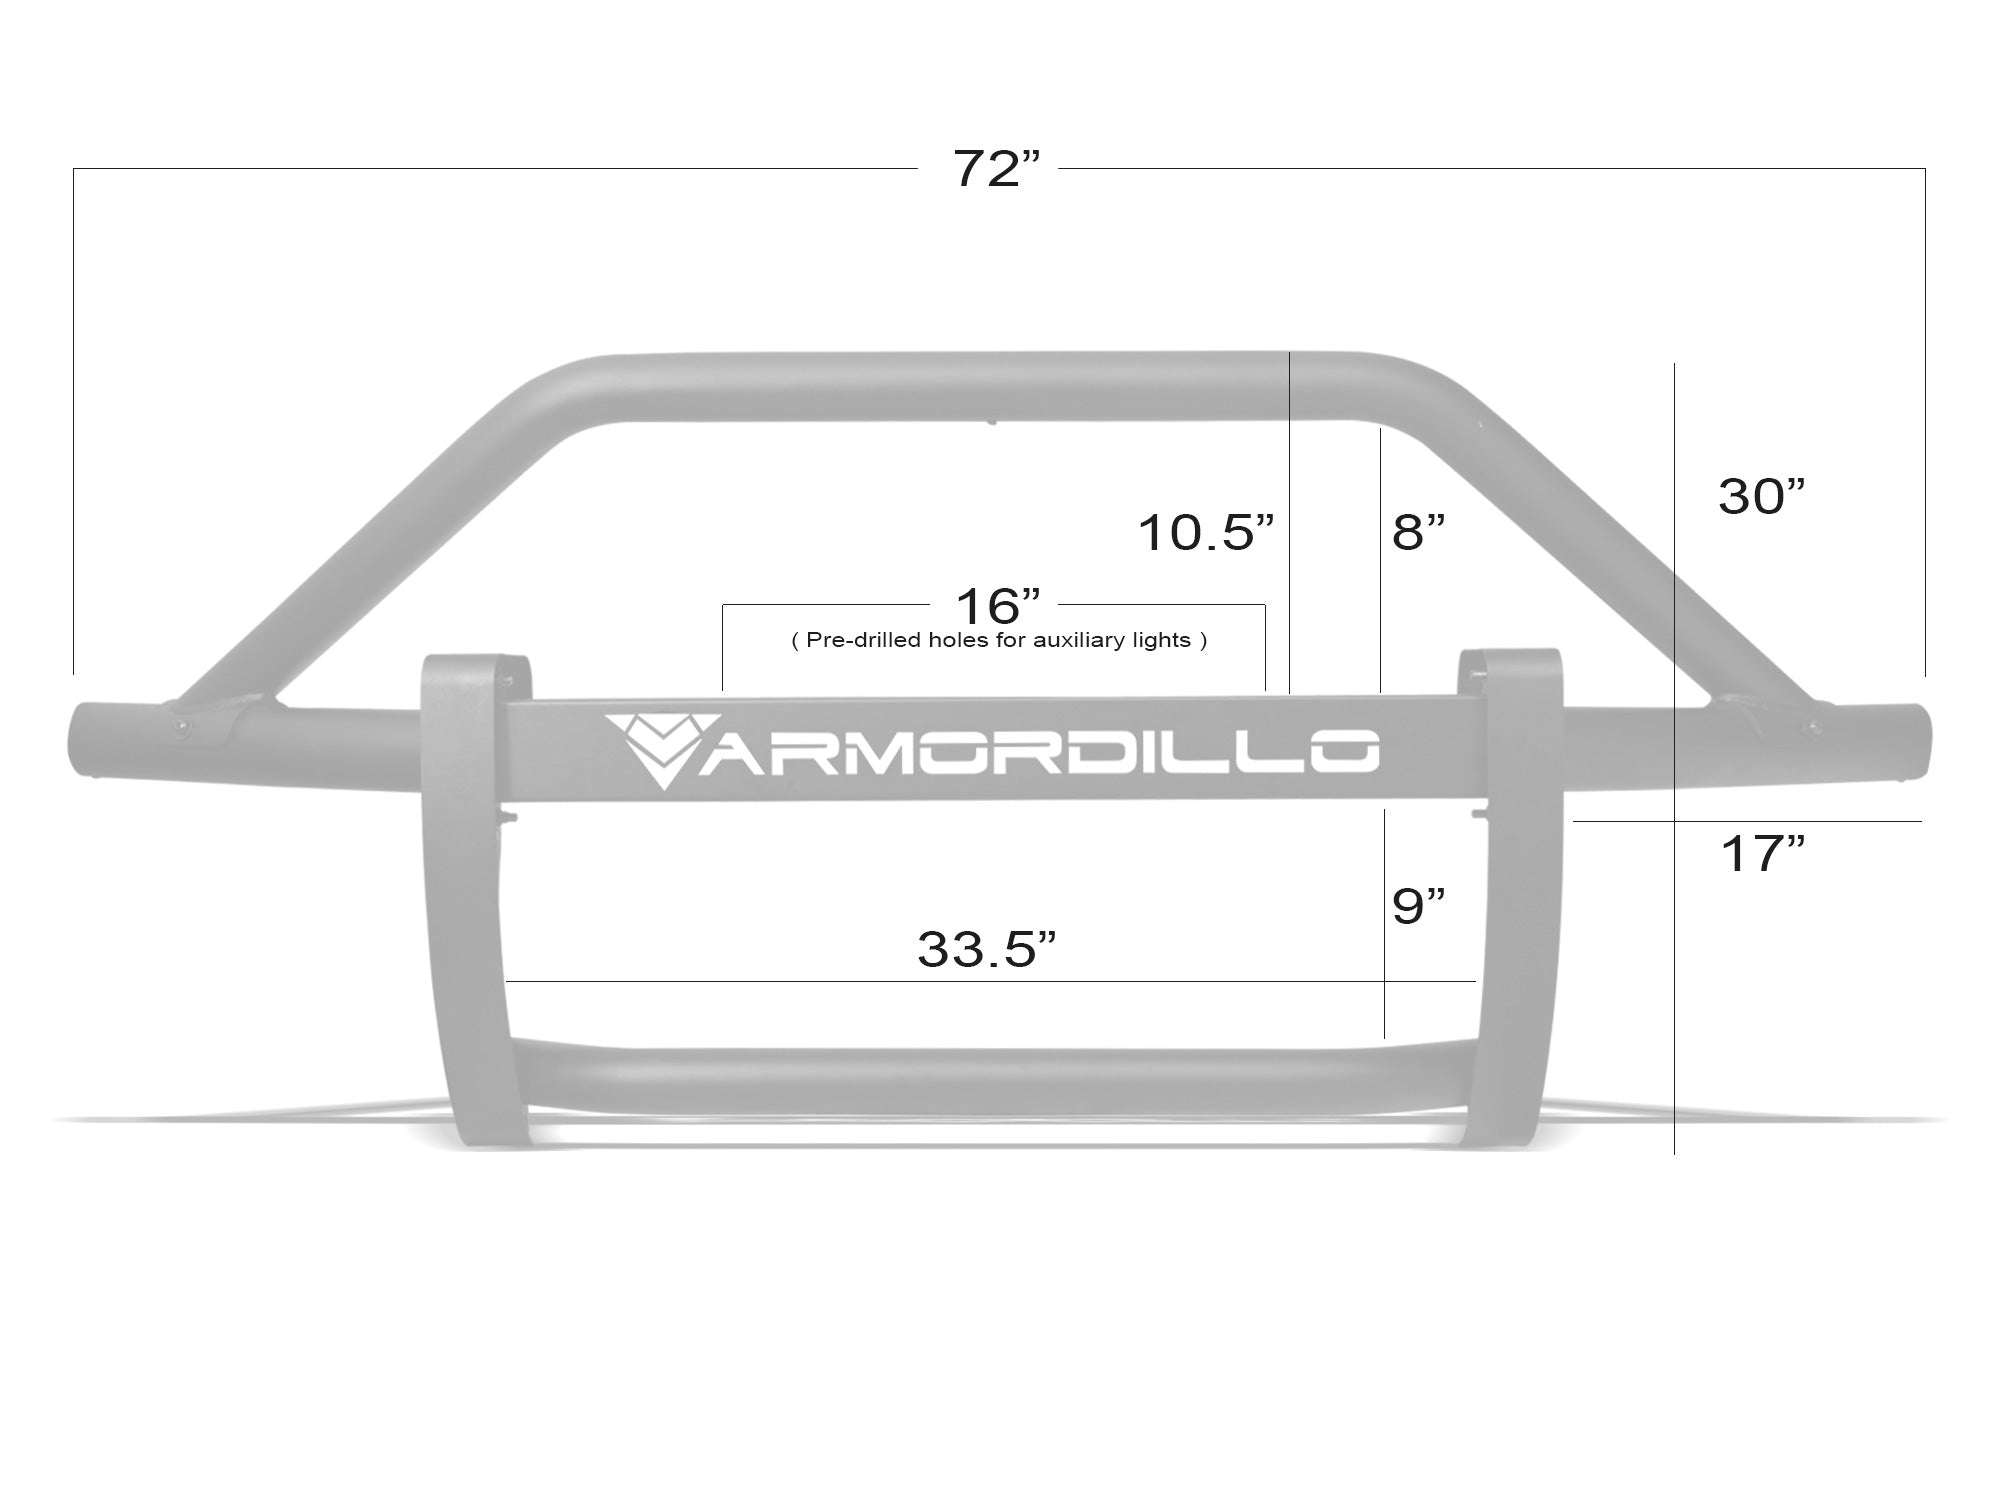 Armordillo USA 2019-2022 DODGE RAM 1500 AR PRE-RUNNER GUARD - MATTE BLACK